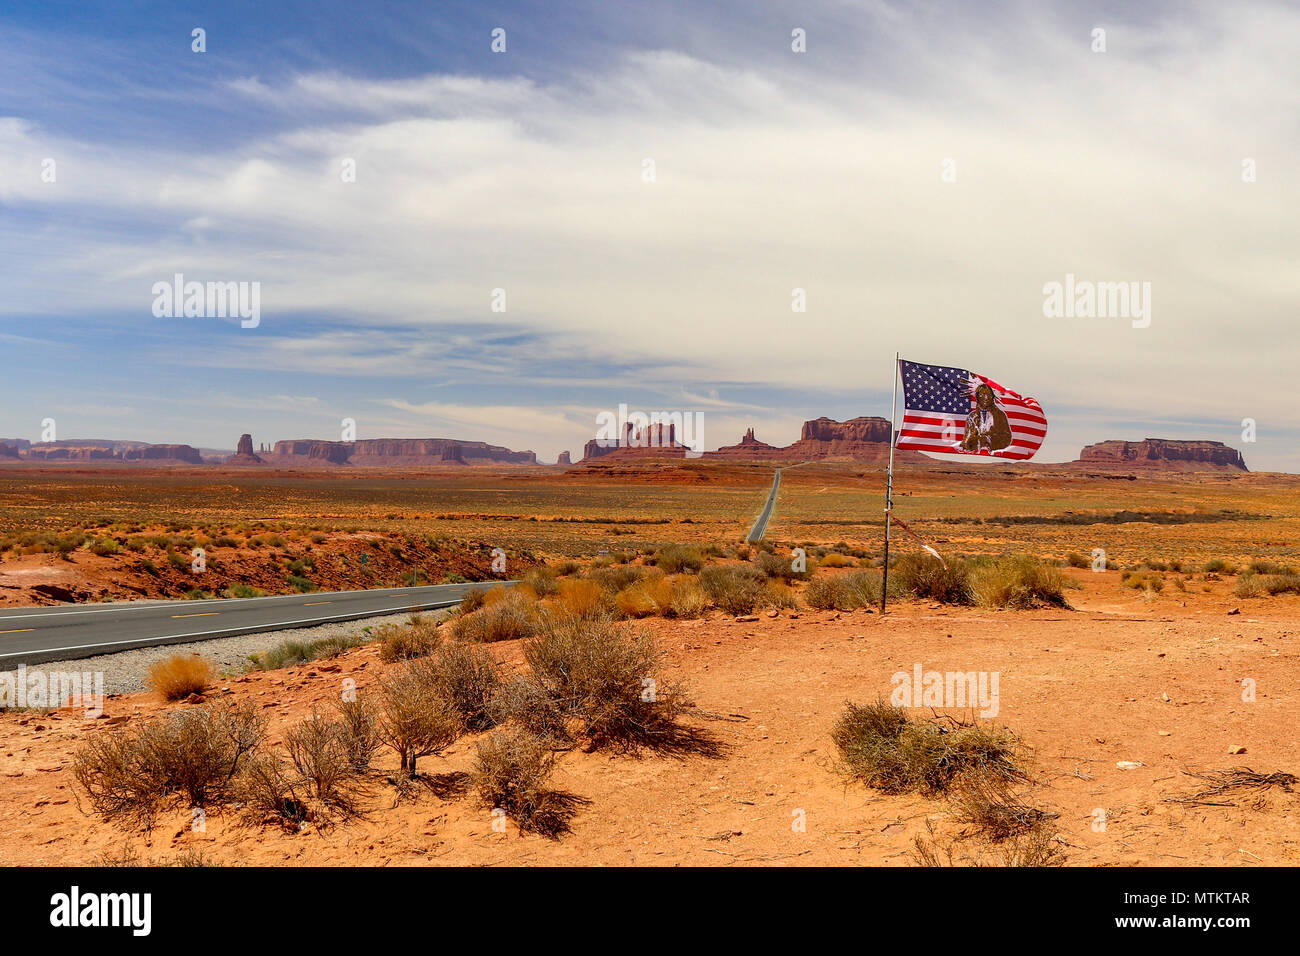 Dieses berühmten Hwy 163 in Utah reist quer durch die Wüste in Richtung Monument Valley. Stockfoto